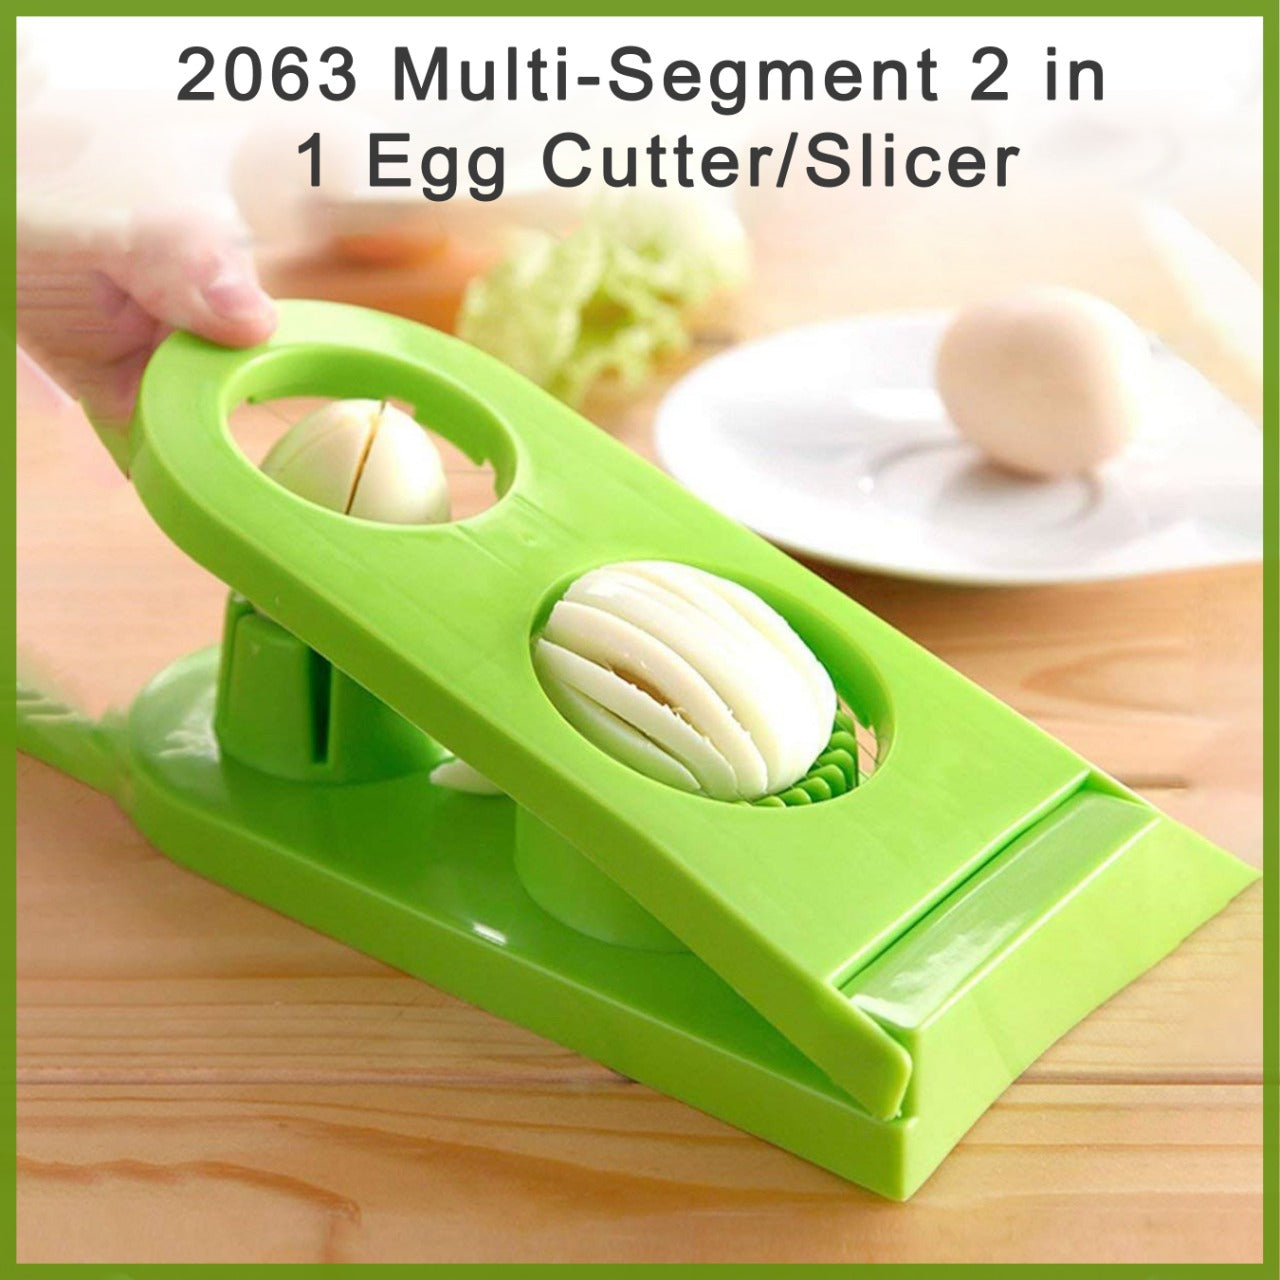 Multi-Segment 2 in 1 Egg Cutter/Slicer